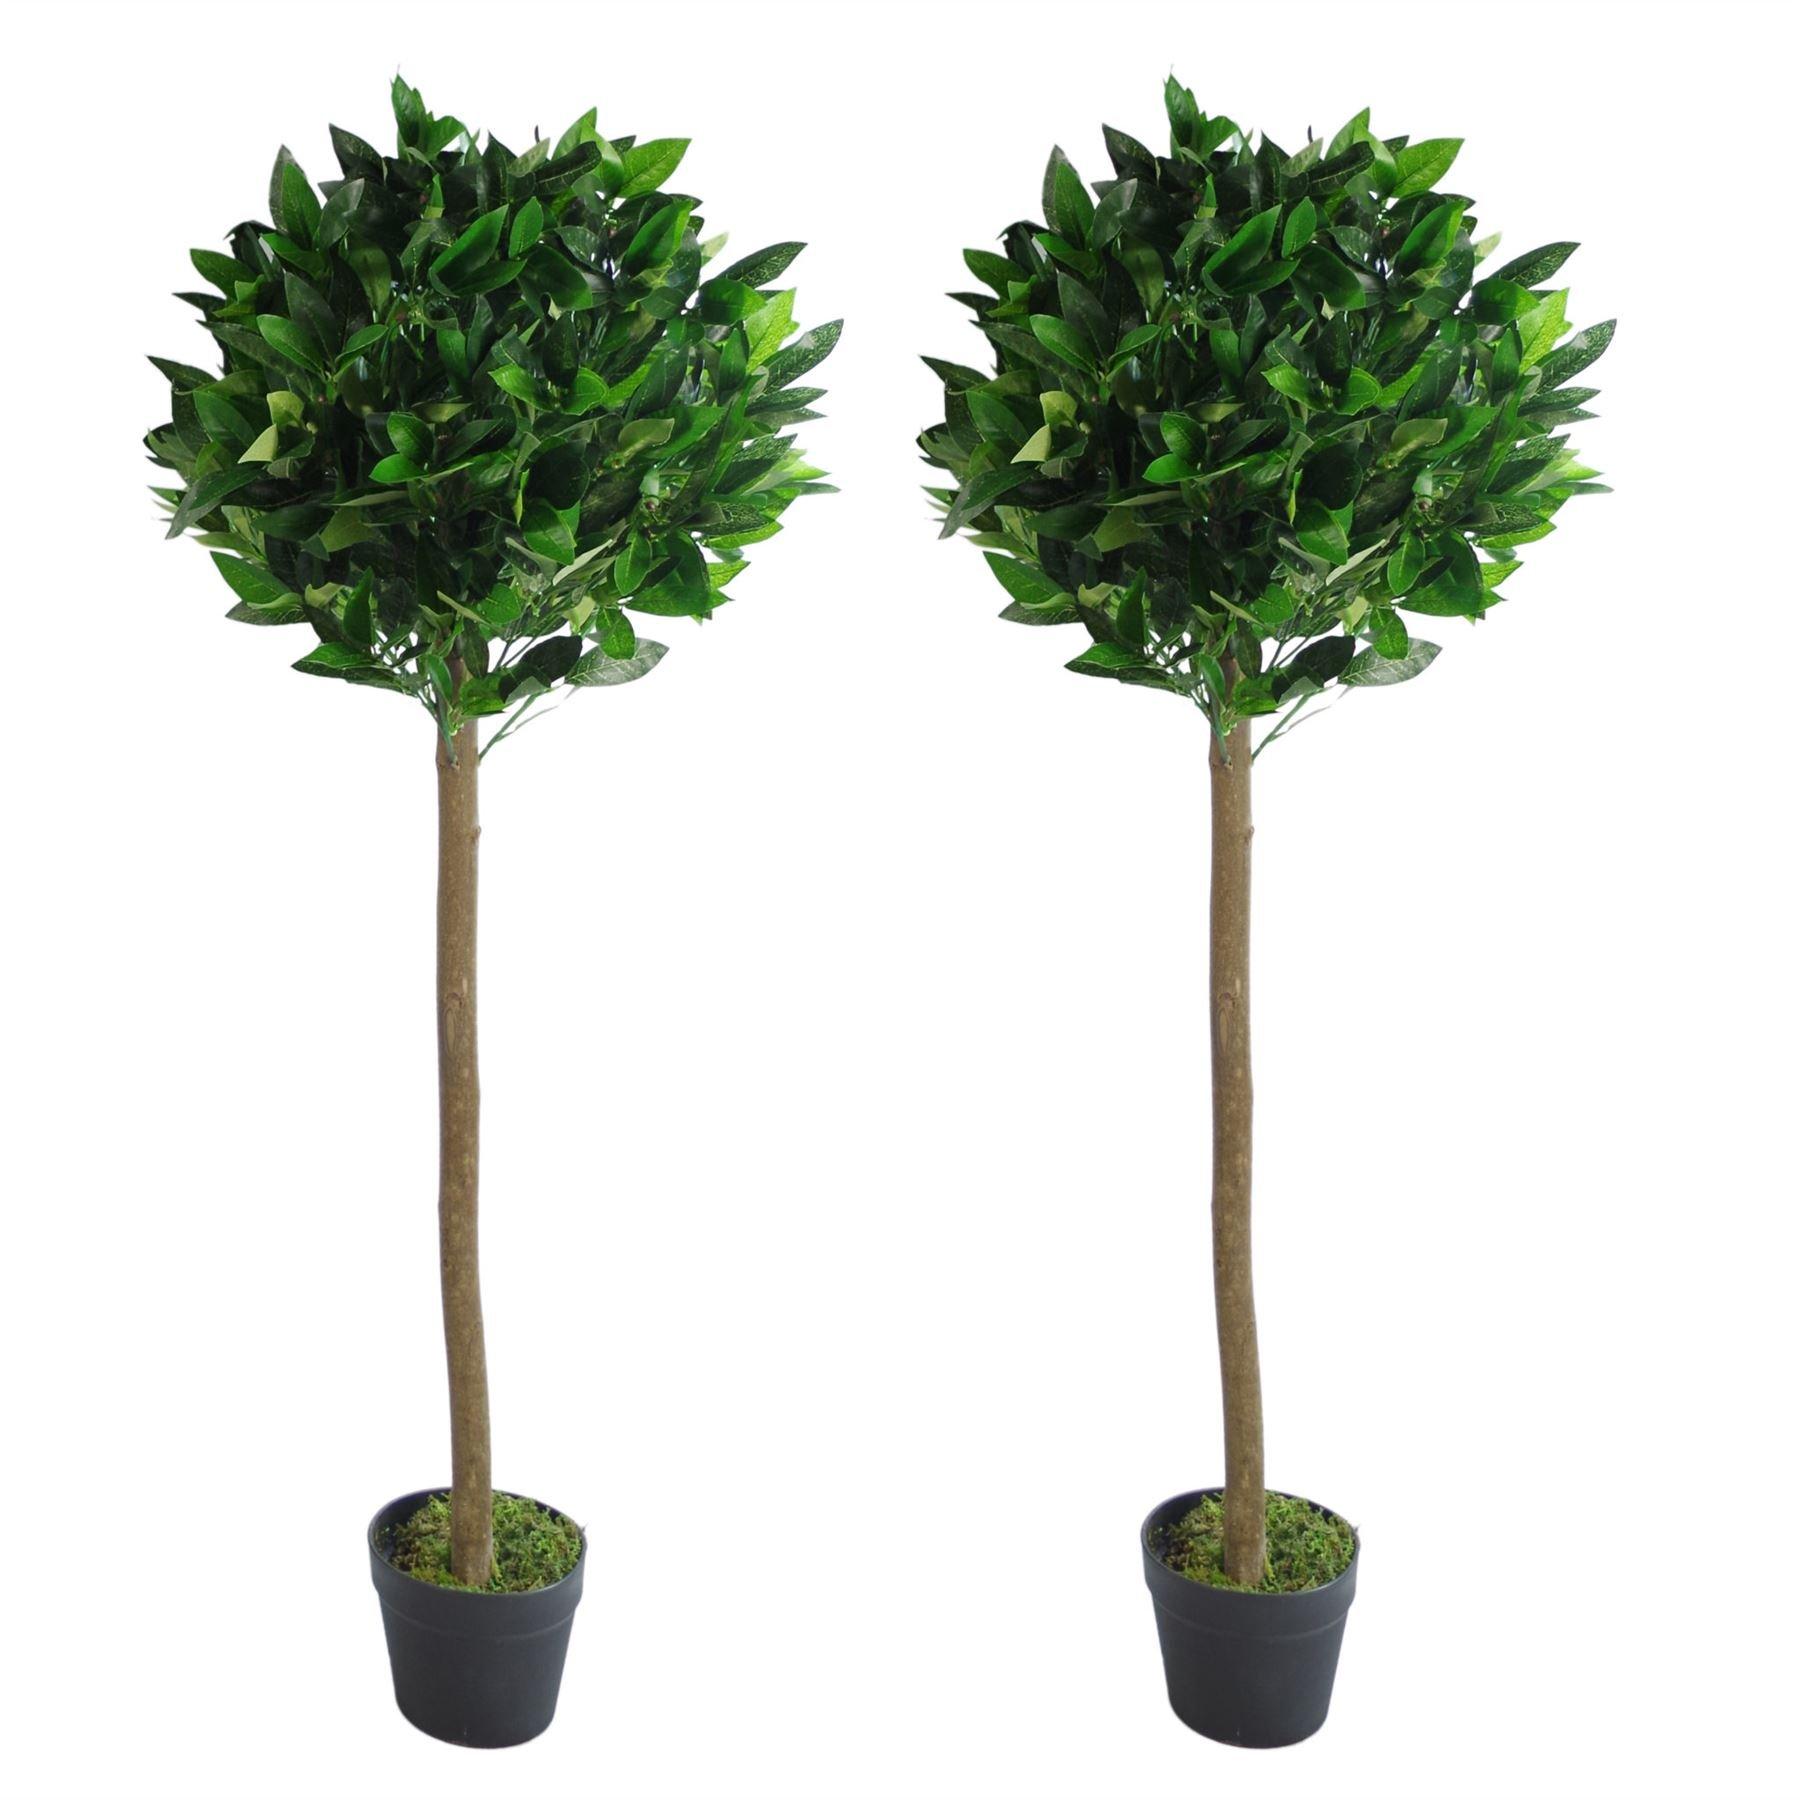 Pair of 120cm (4ft) Plain Stem Artificial Topiary Bay Laurel Ball Trees